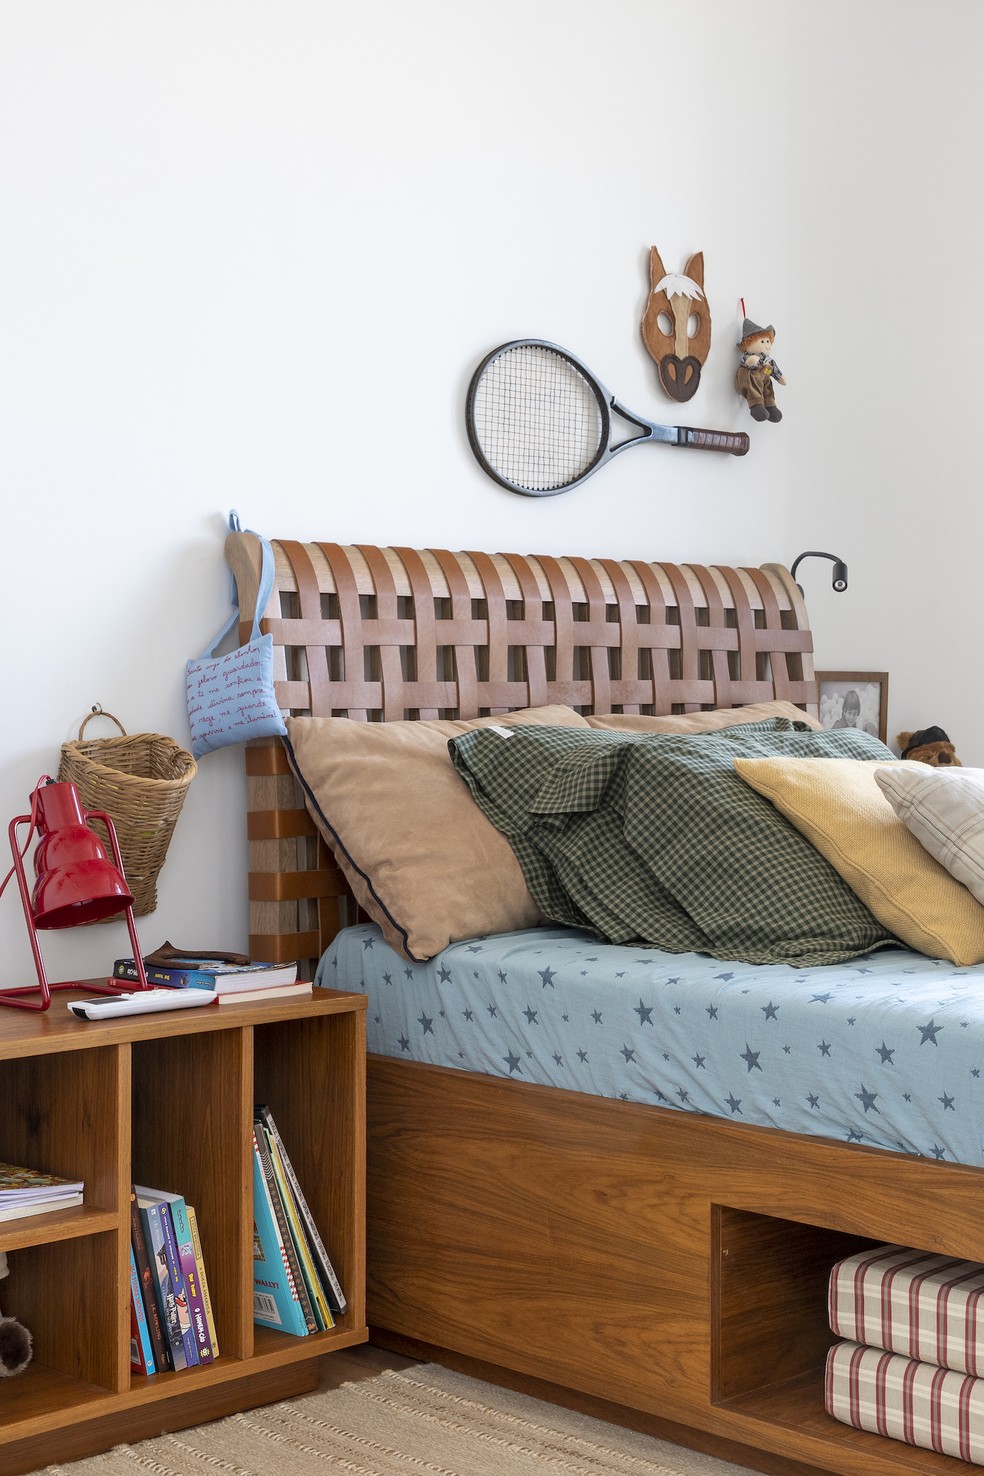 QUARTO | O cômodo das crianças traz toques de cor nas roupas de cama e acessórios, sob uma base neutra com madeira — Foto: Keniche Santos / Divulgação